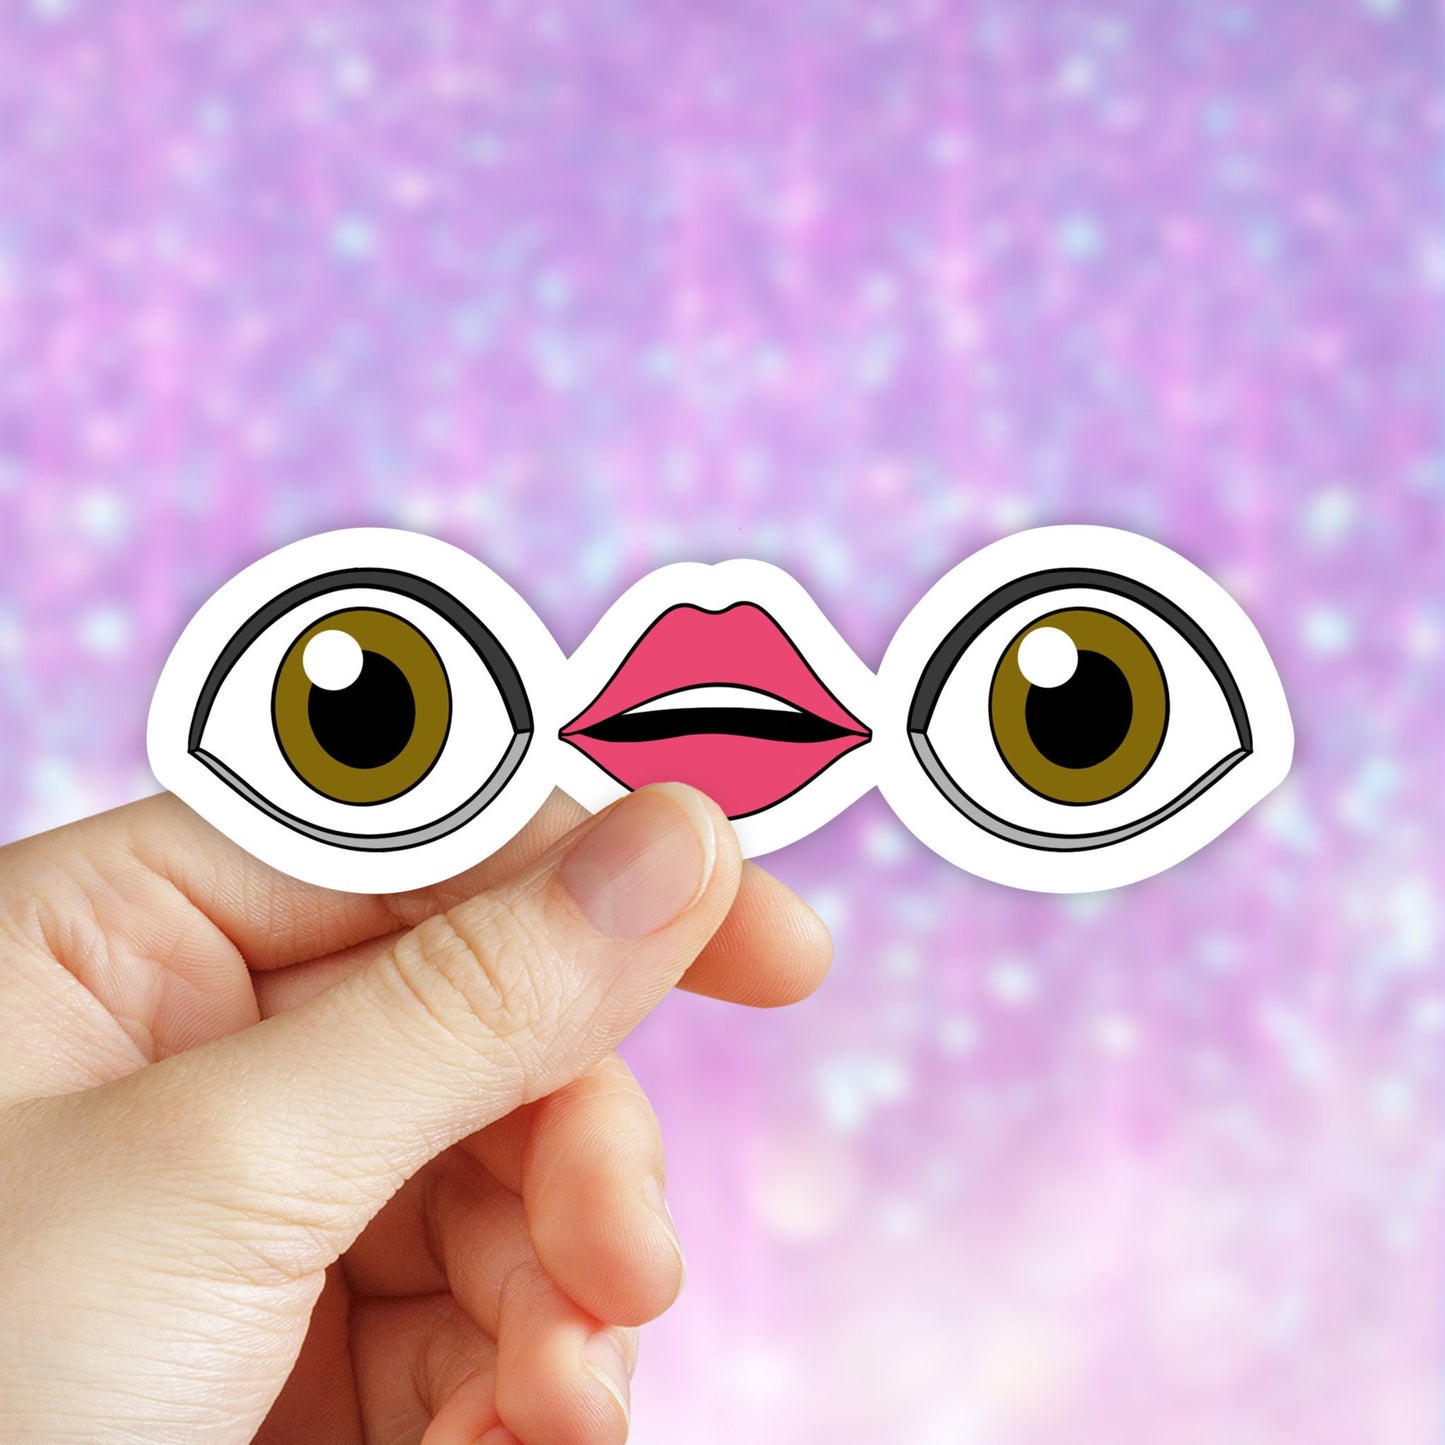 TikTok Sticker, Meme Stickers, Eye Mouth Eye Emoji Sticker, Meme Decal, Trendy Stickers, Cute Stickers, Water Bottle, Best friend Gift